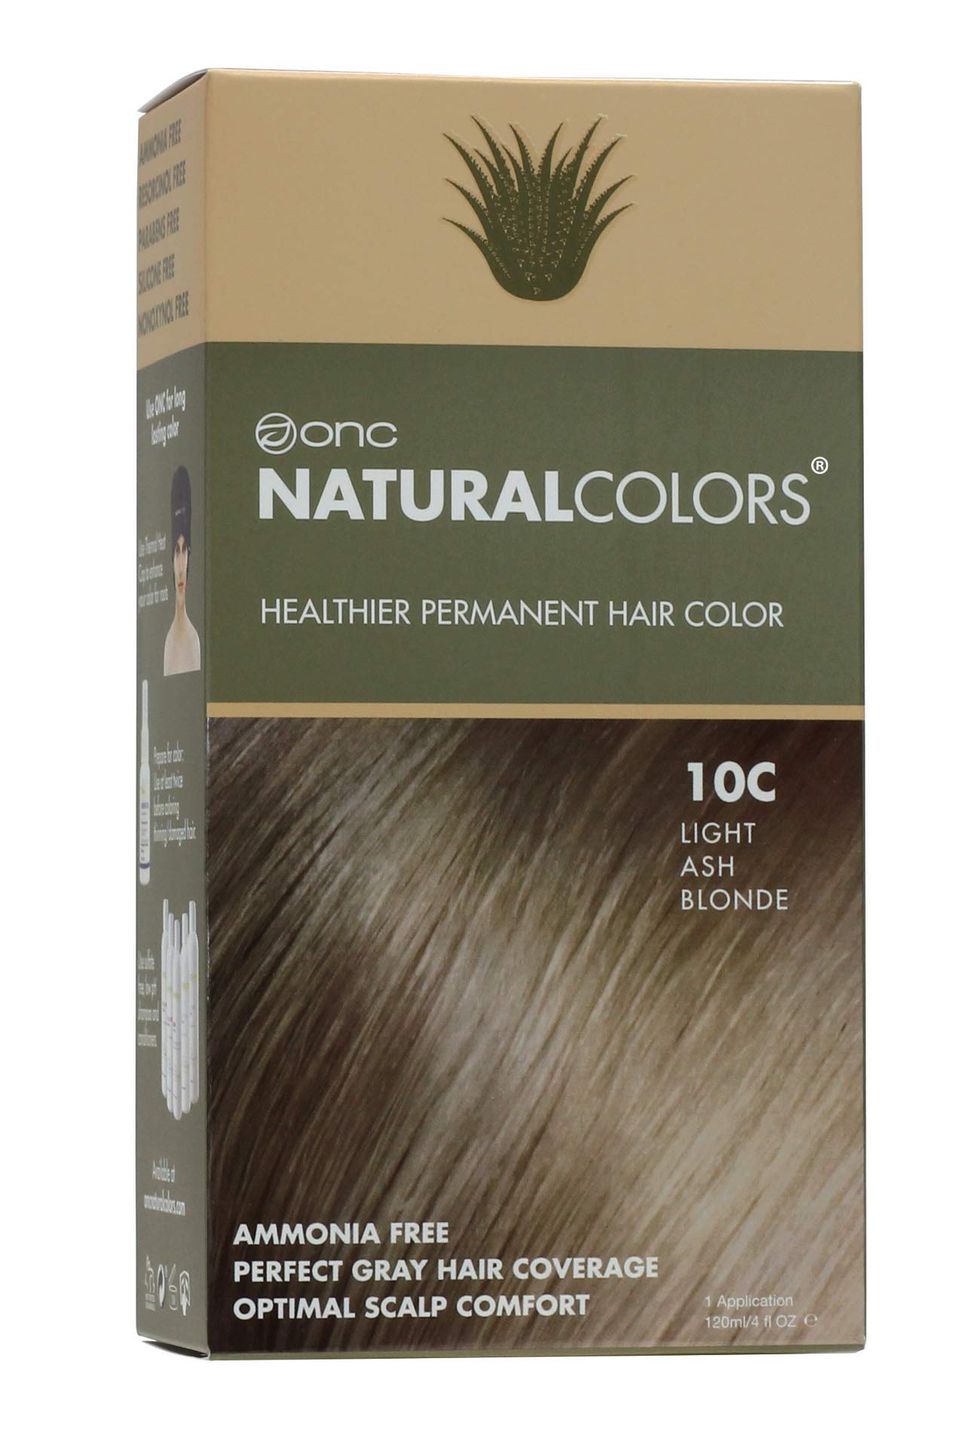 NaturalColors Healthier Permanent Hair Colour